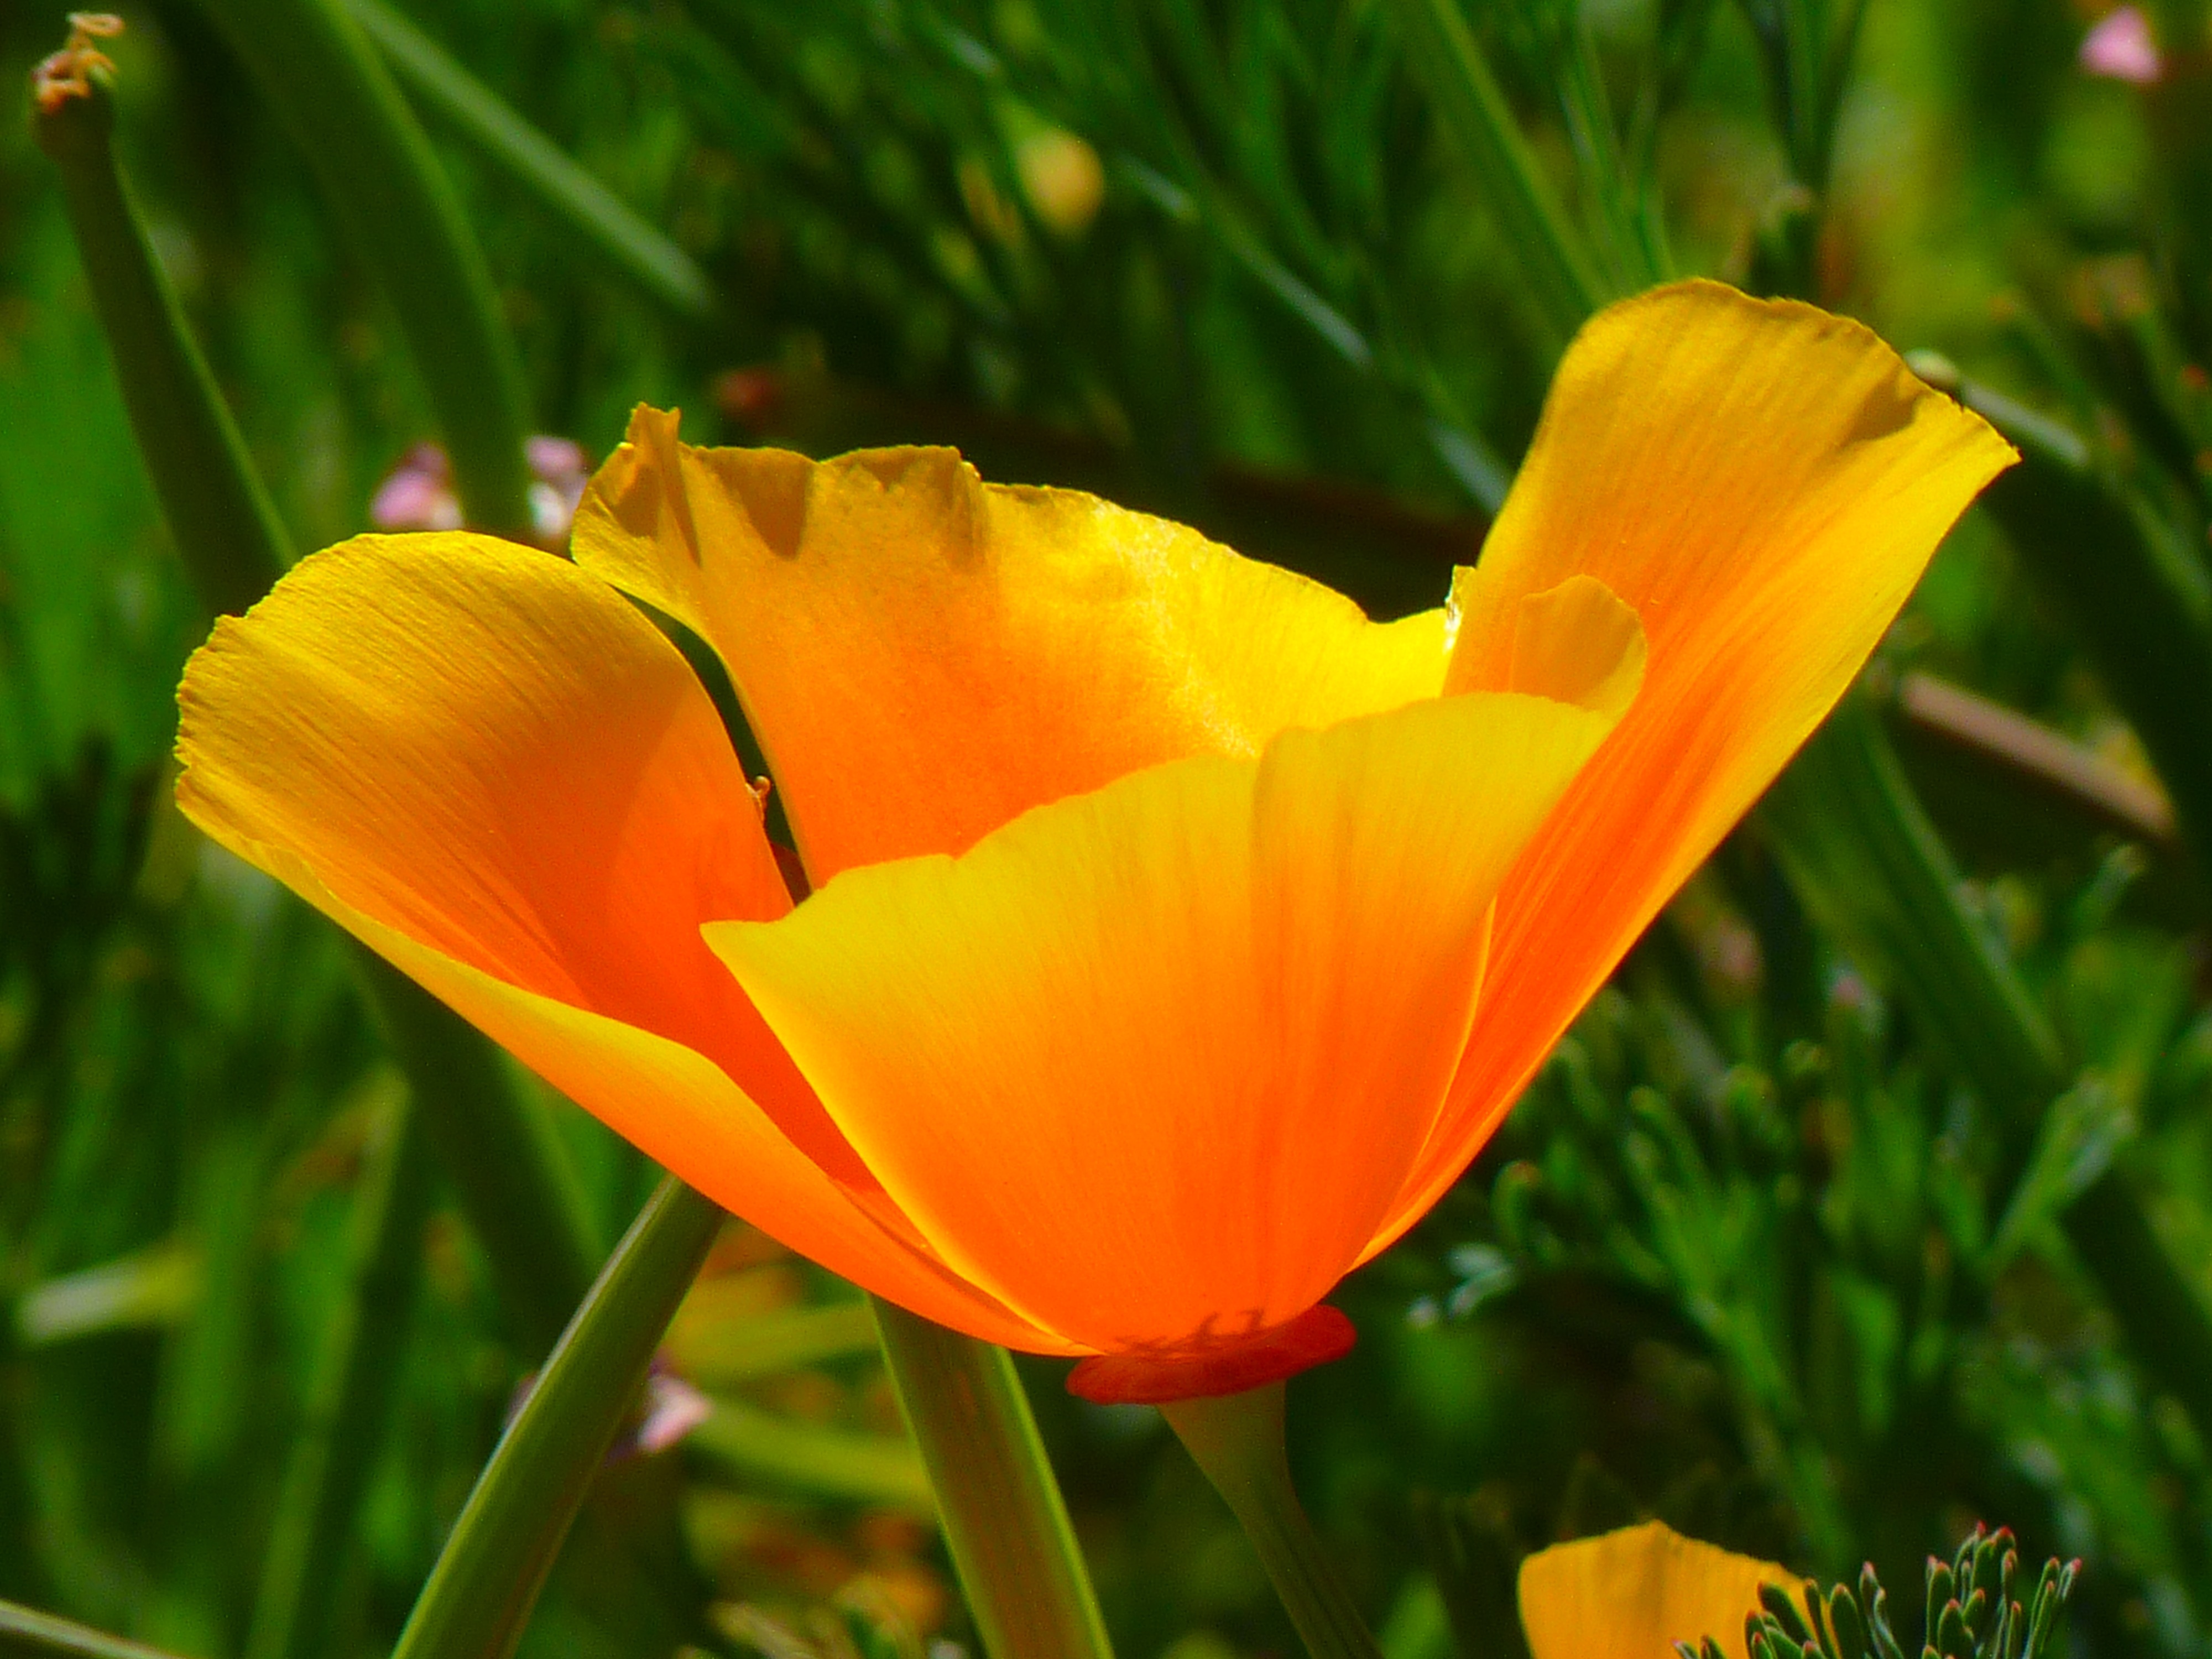 Фото природа, цветок, растение, поле, луг, лепесток, цветения, оранжевый, цвет, ботаника, красочный, желтый, флора, полевой цветок, яркий - бесплатные картинки на Fonwall